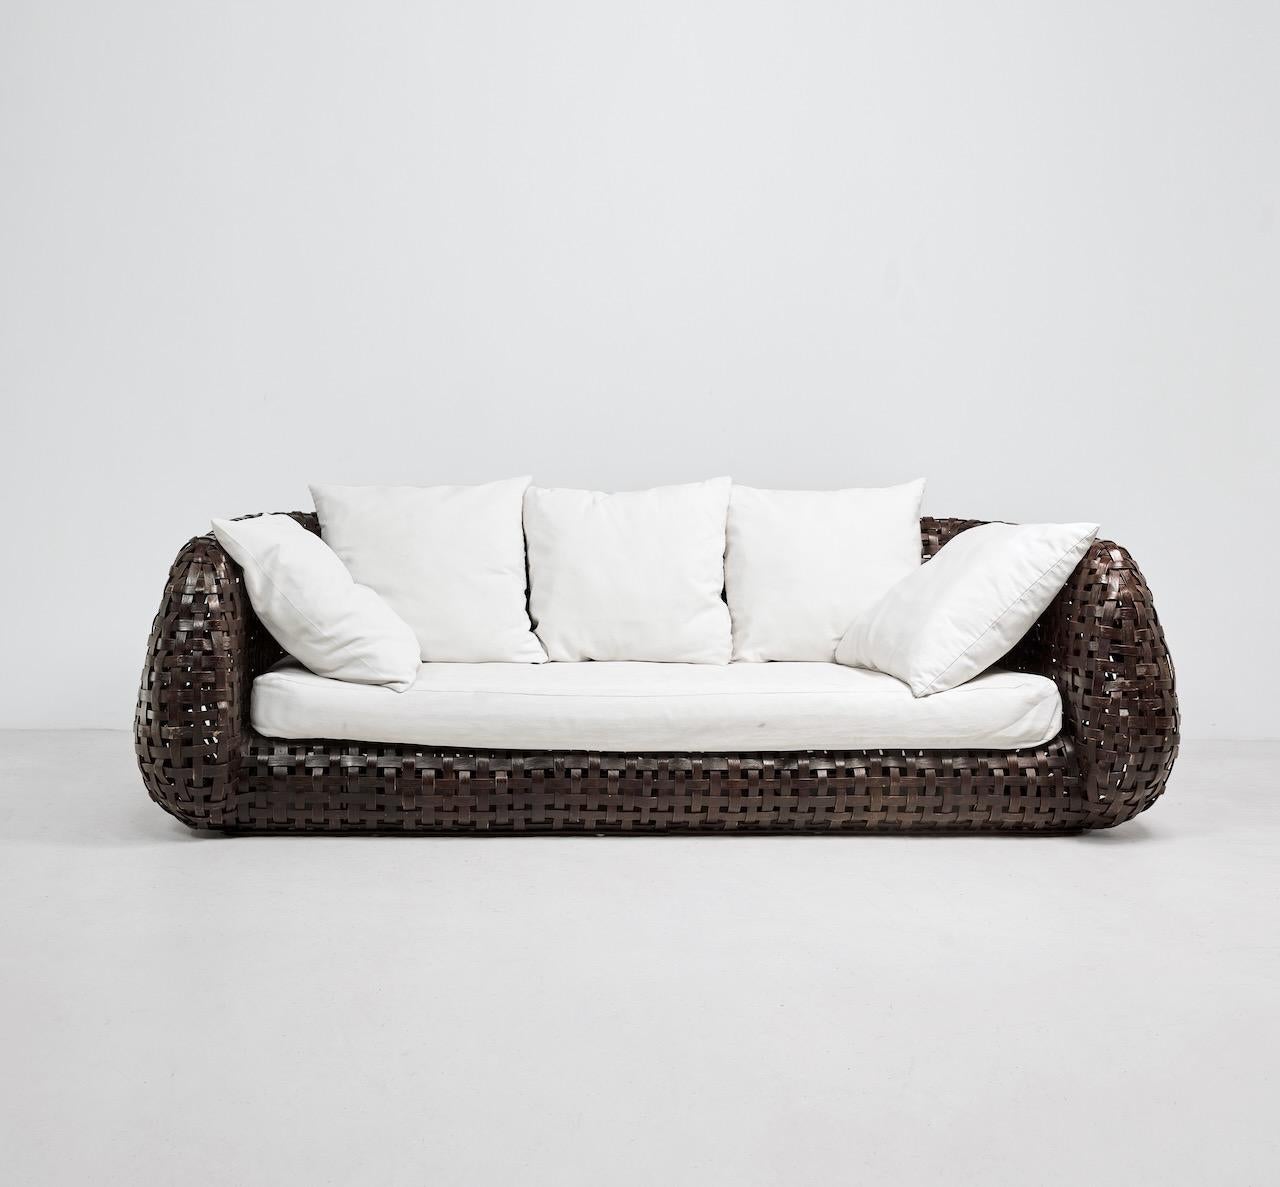 Sofa aus dem späten 20. Jahrhundert, bestehend aus geflochtenem Rattan auf einem Bambusrahmen. Dazu gibt es ein Kissen, das mit einem cremefarbenen Baumwollstoff bezogen ist. 


Abmessungen (cm, ca.): 
Höhe: 70
Breite: 228
Tiefe: 111
